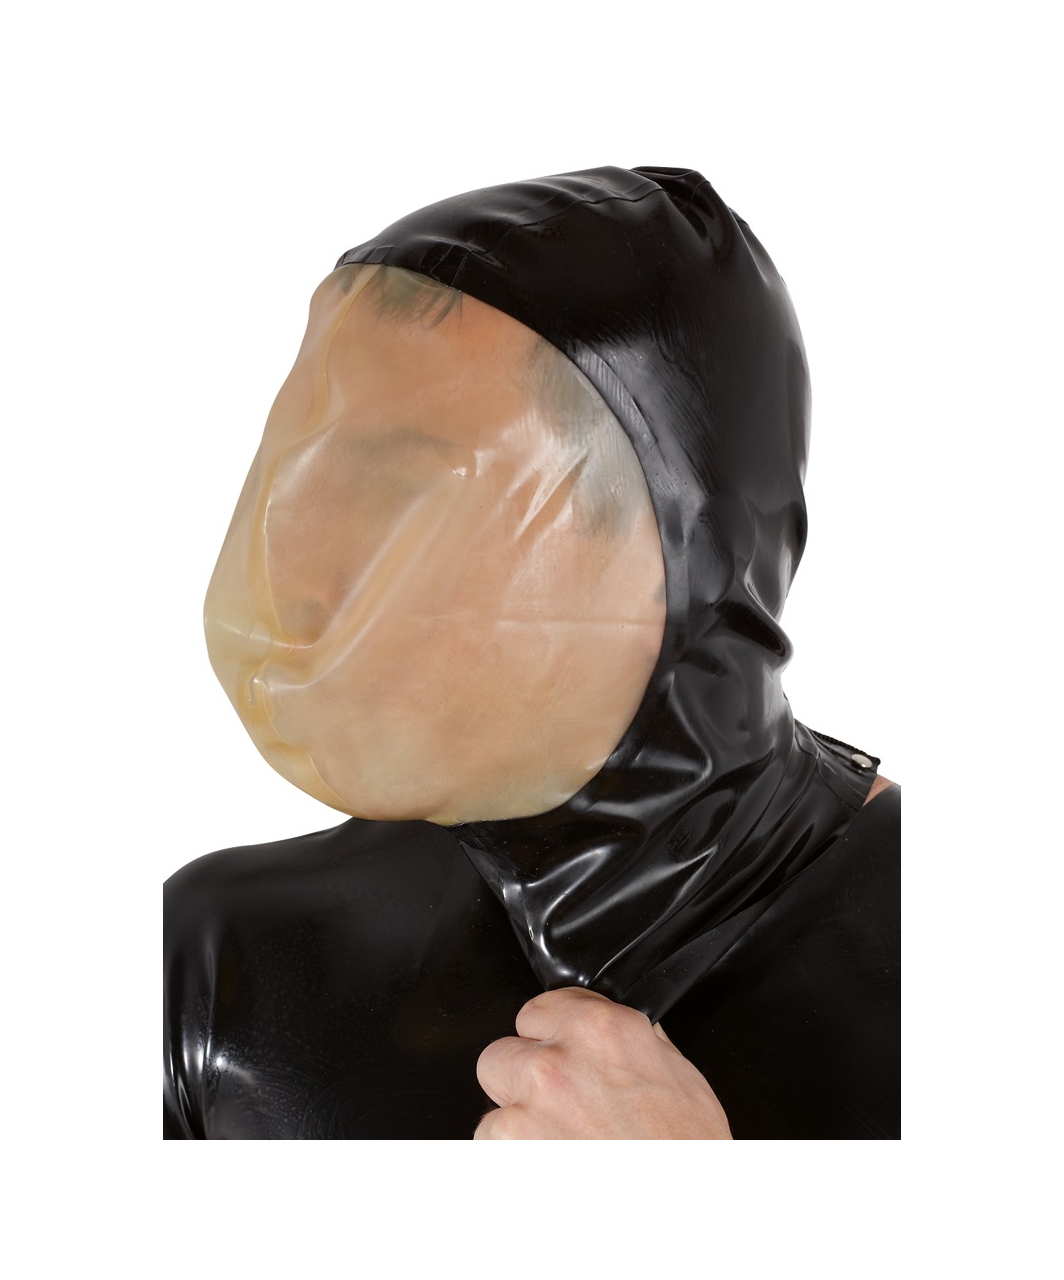 Late X маска из латекса для контроля дыхания